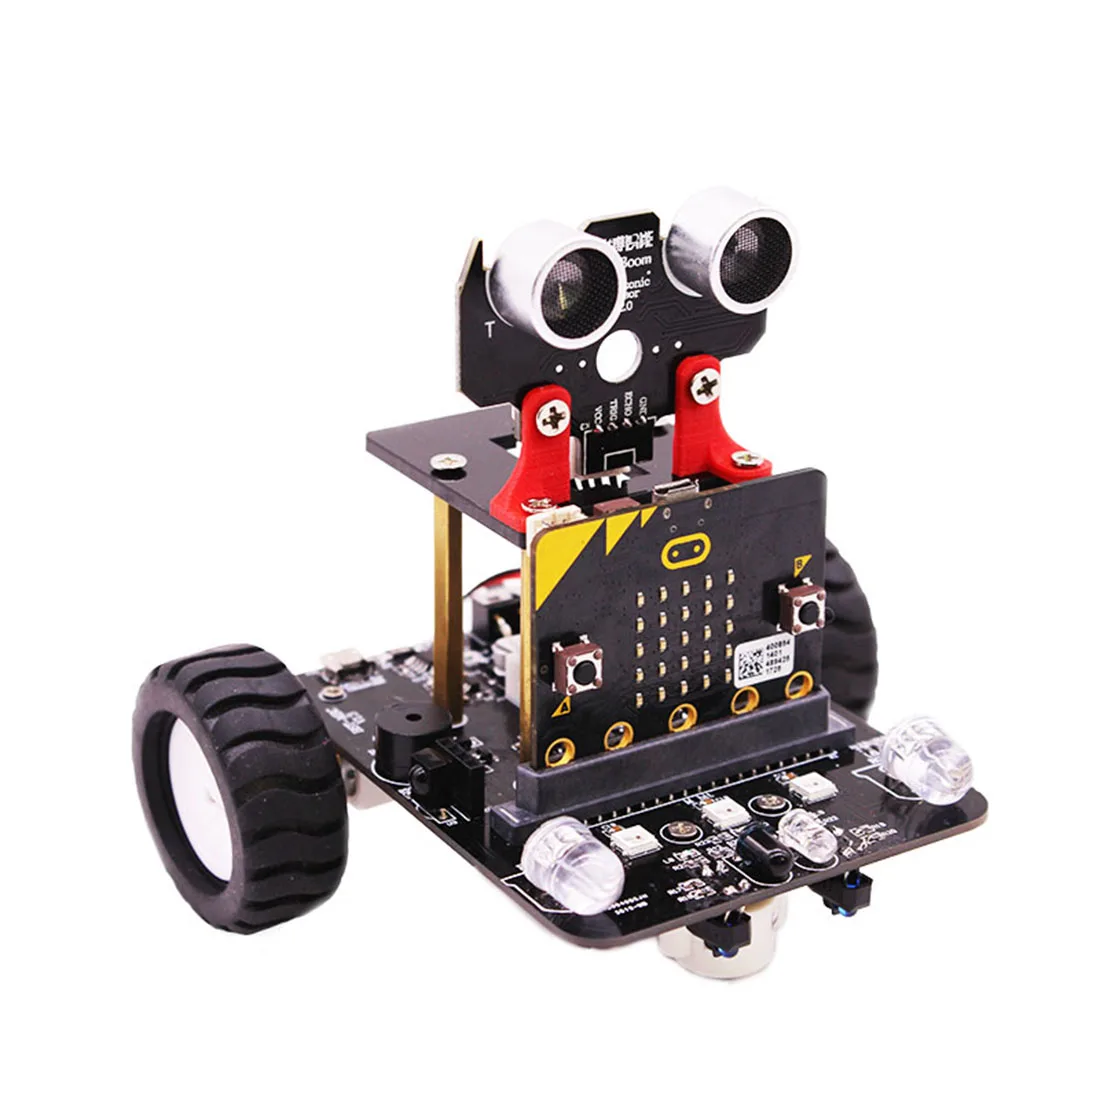 Модифицирующий Графический программируемый высокотехнологичный робот-автомобиль, модуль отслеживания игрушек, плата расширения, силиконовый защитный чехол для Micro: bit